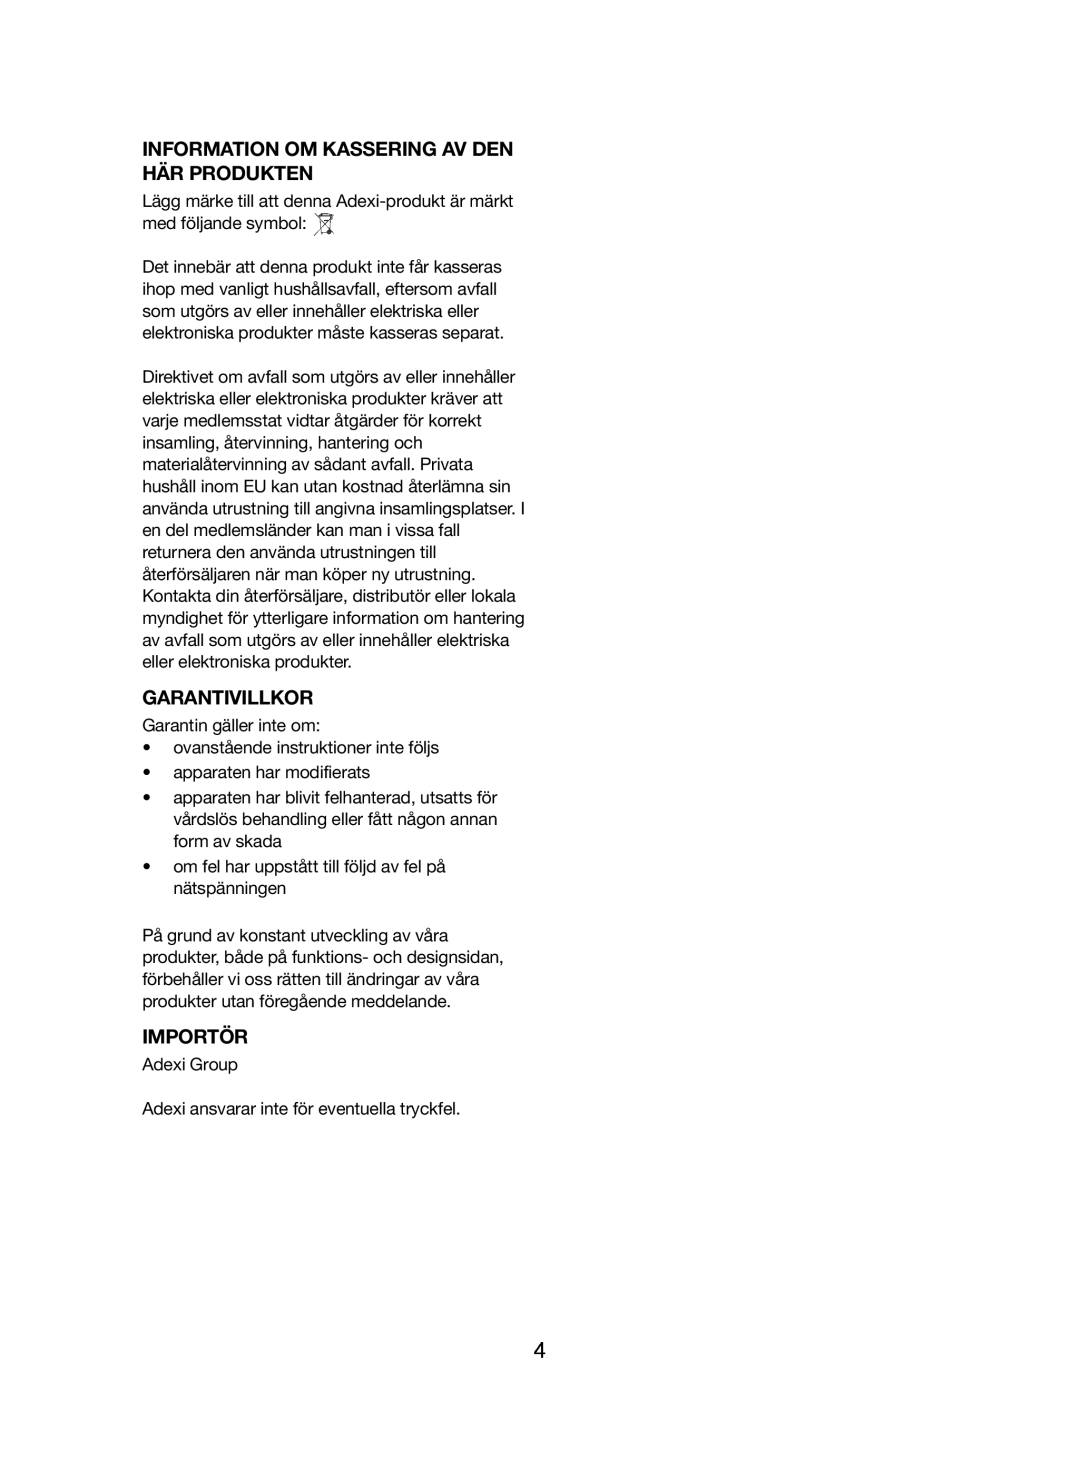 Melissa 746-086 manual Information Om Kassering Av Den Här Produkten, Garantivillkor, Importör 